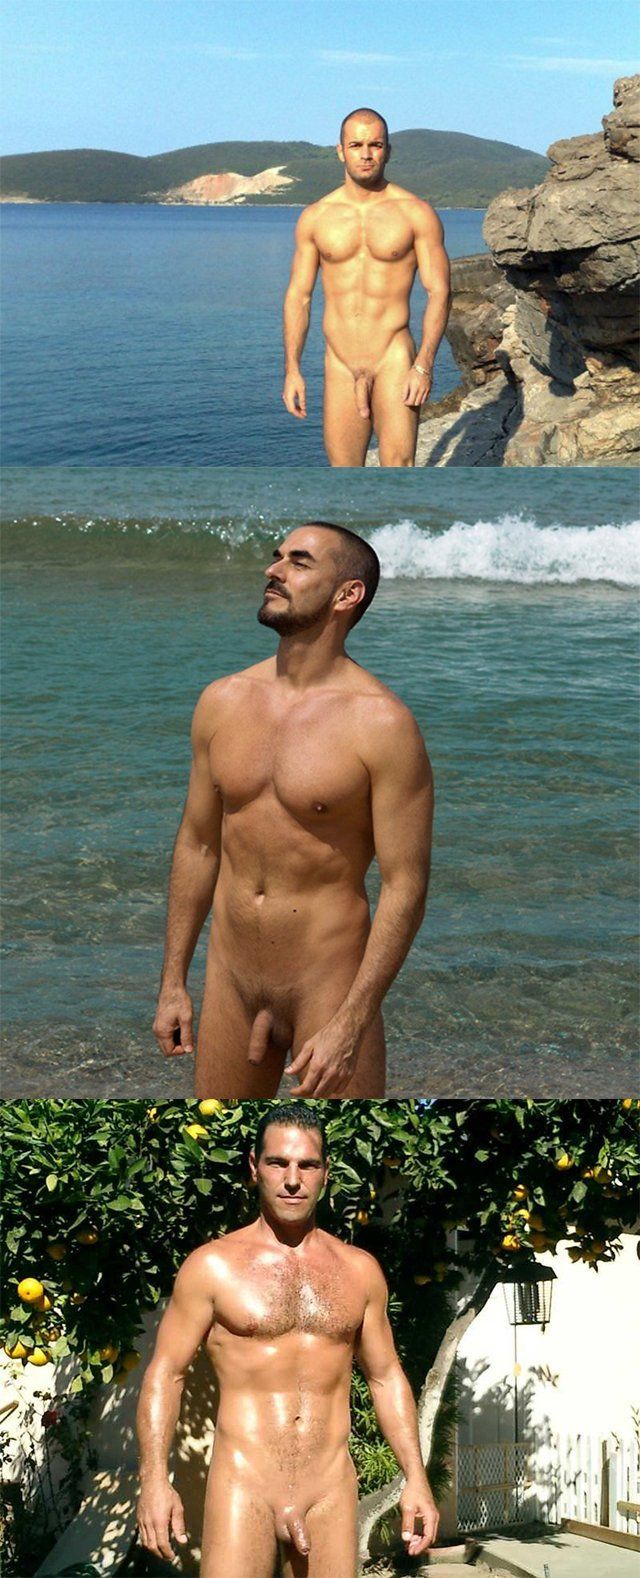 Huge cock of nudist men in the beach